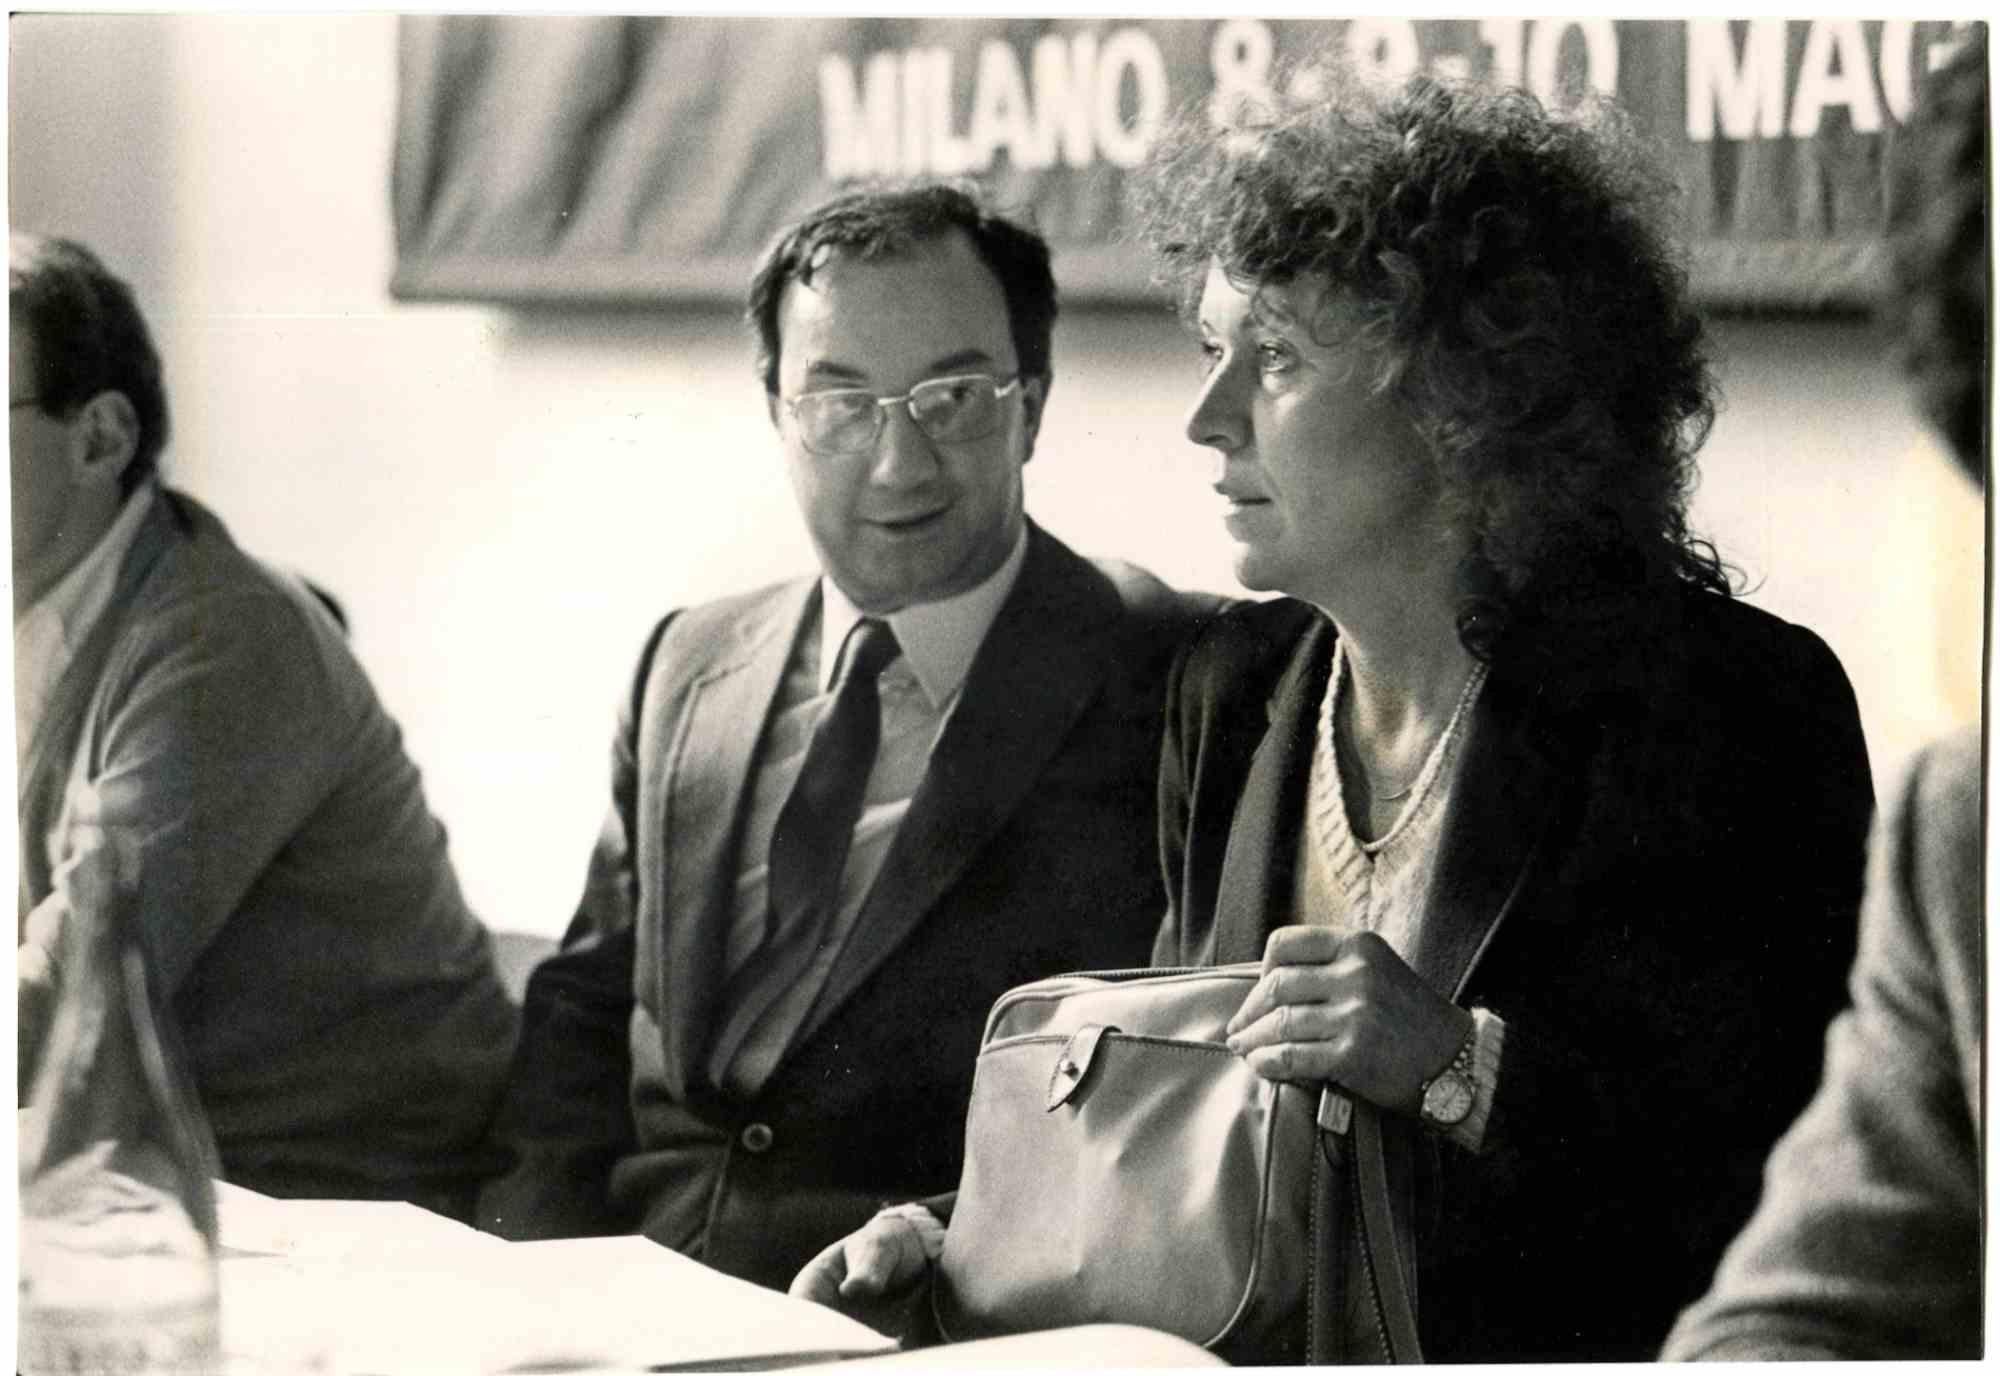 Unknown Figurative Photograph - Margherita Boniver and Carlo Tognoli -  Photo - 1980s